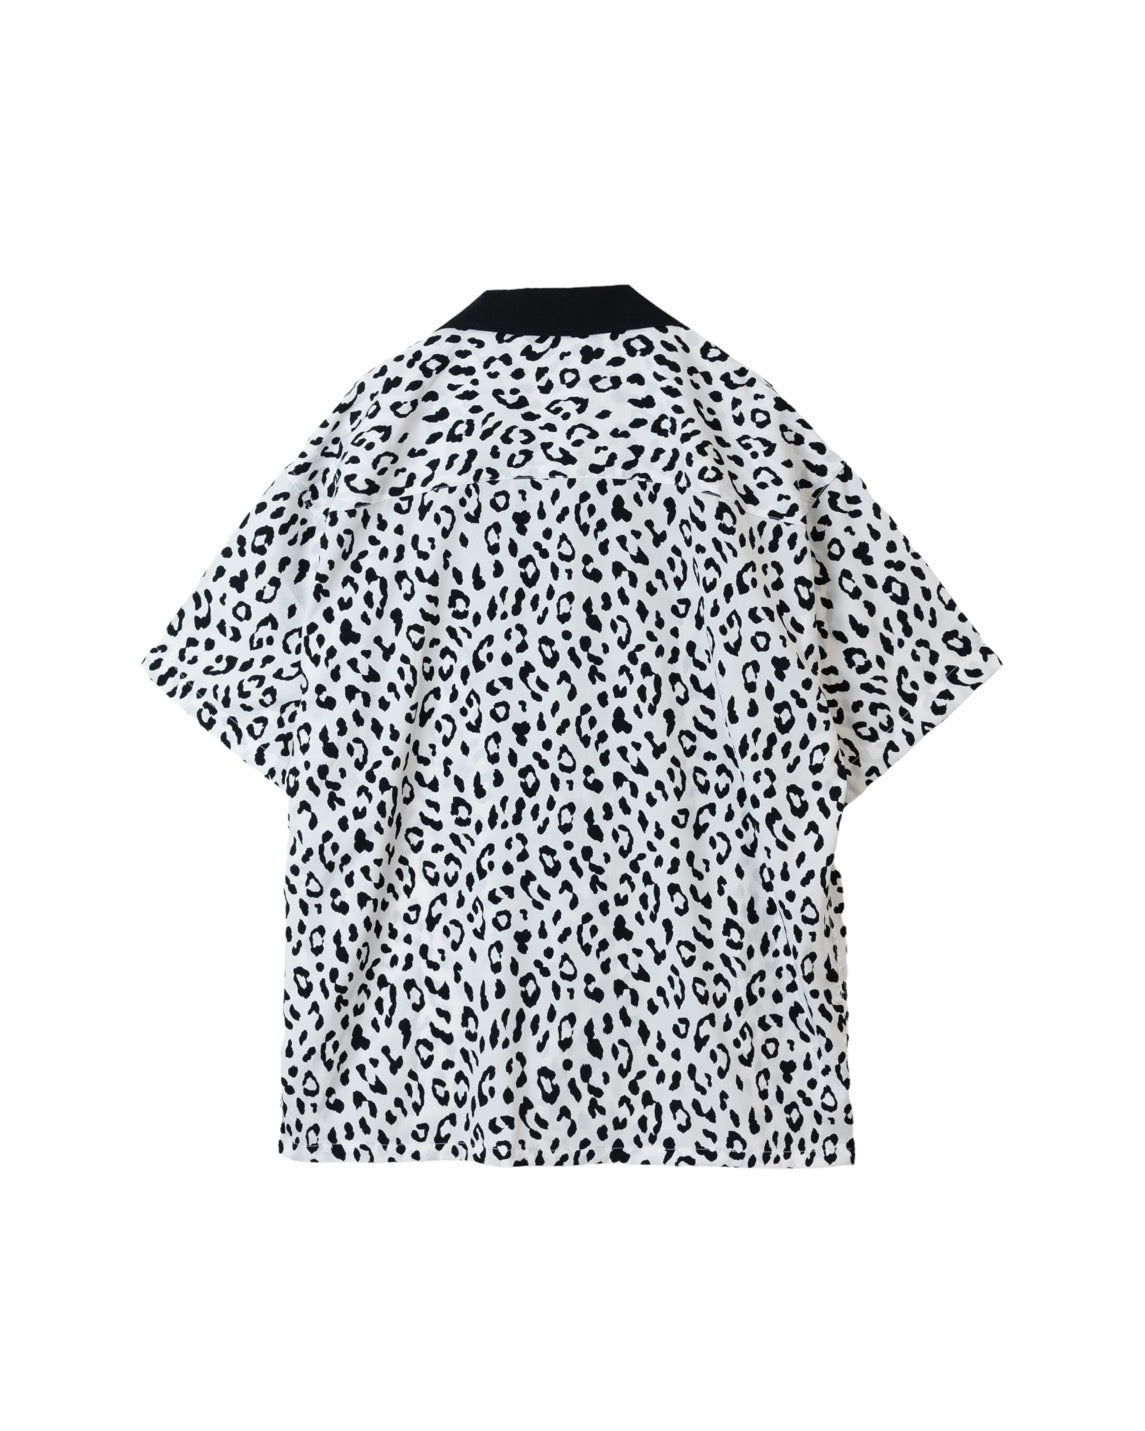 Leopard open collar shirt